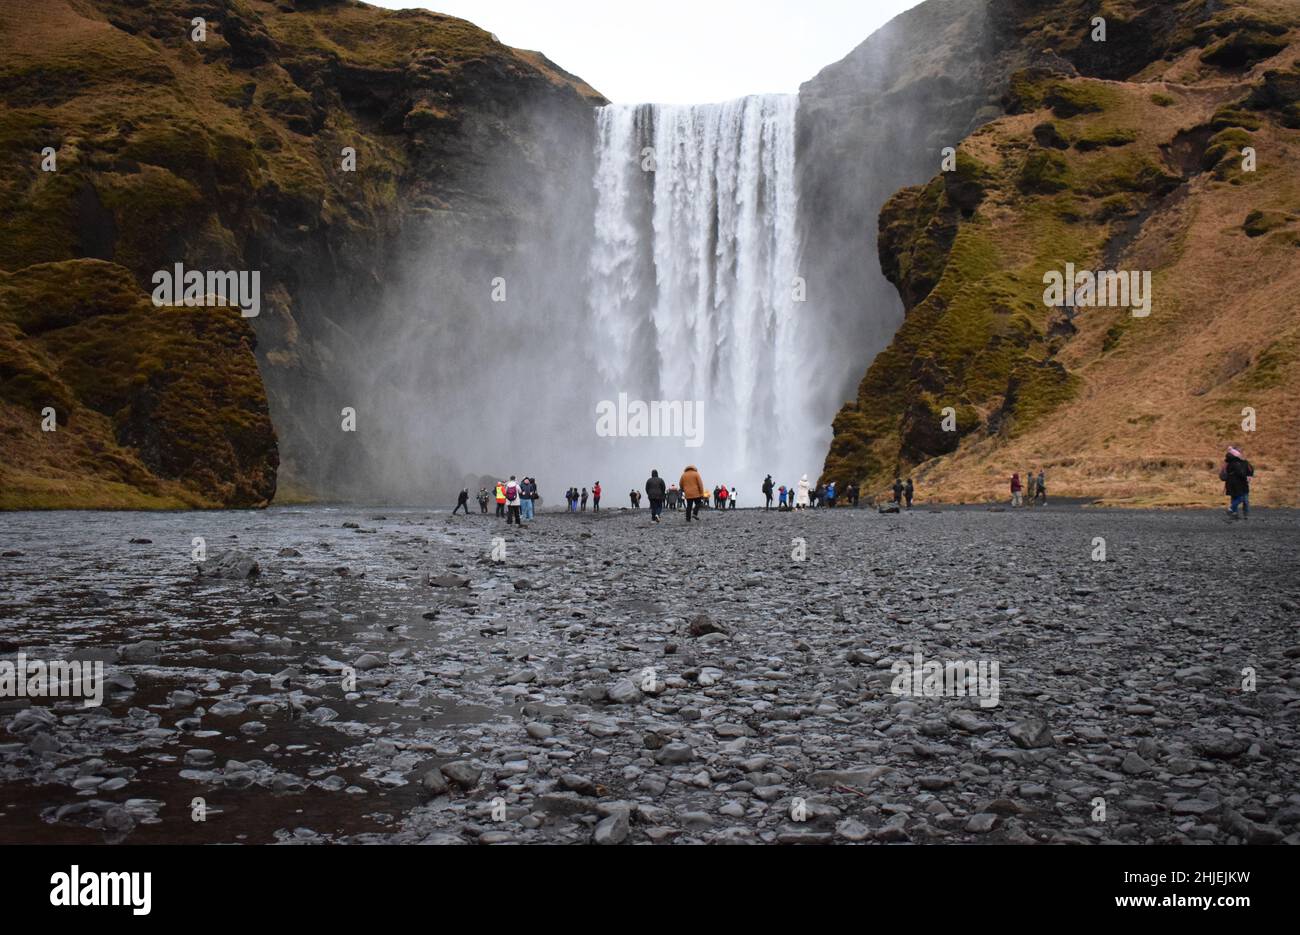 Gennaio 22 Islanda del Sud Un gruppo di turisti che visitano la famosa cascata islandese, Skogafoss. La gente è oscesa dall'enorme cascata alle loro spalle Foto Stock